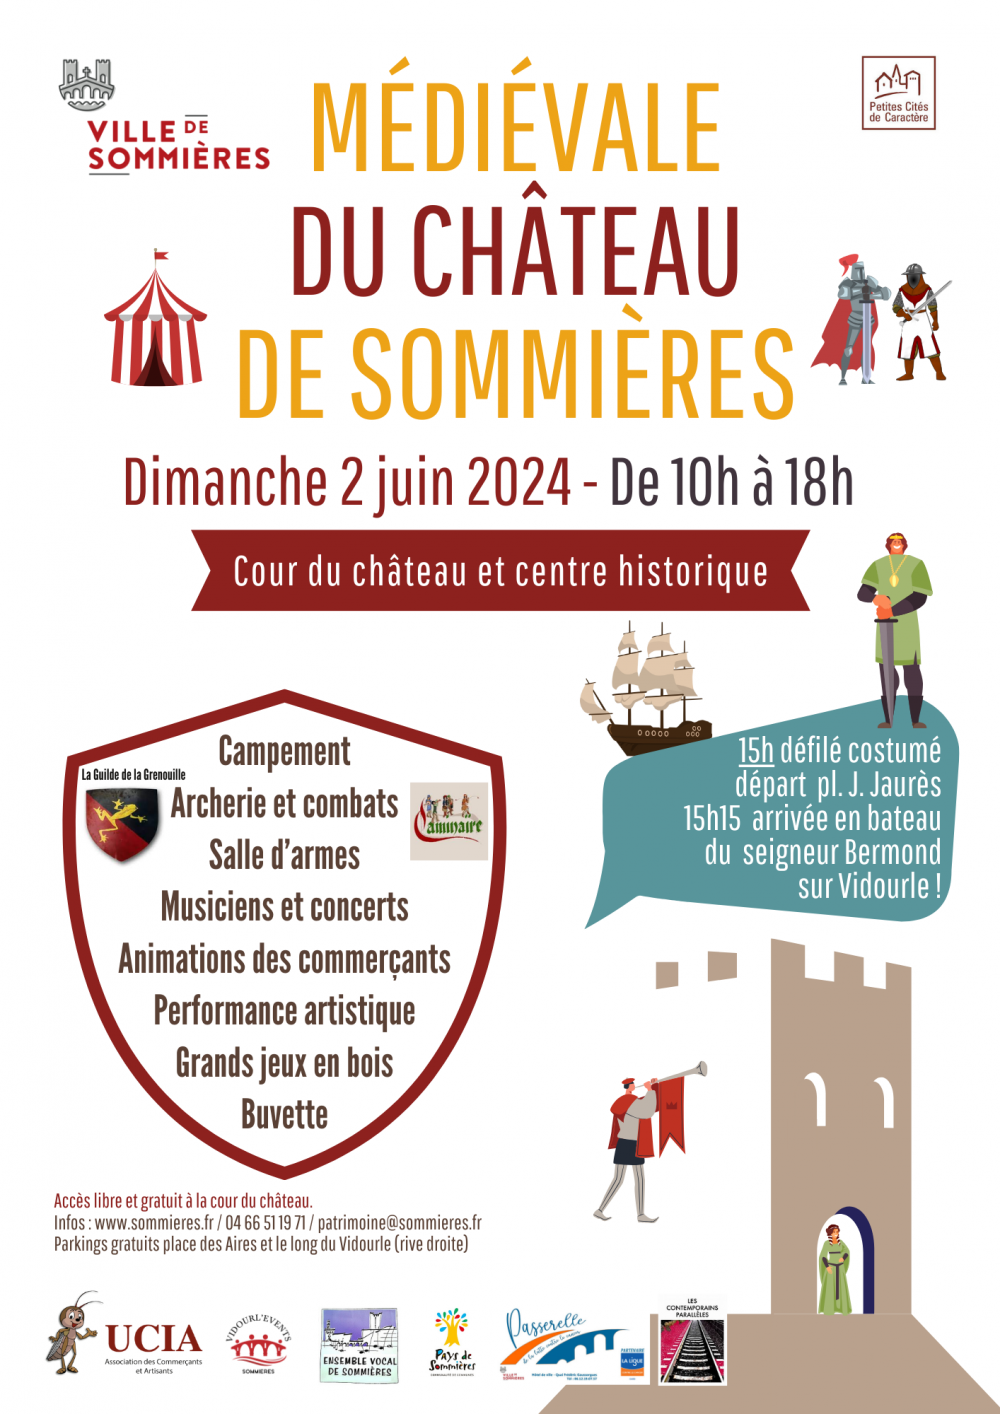 Mdivale du Chteau June 2nd 2024